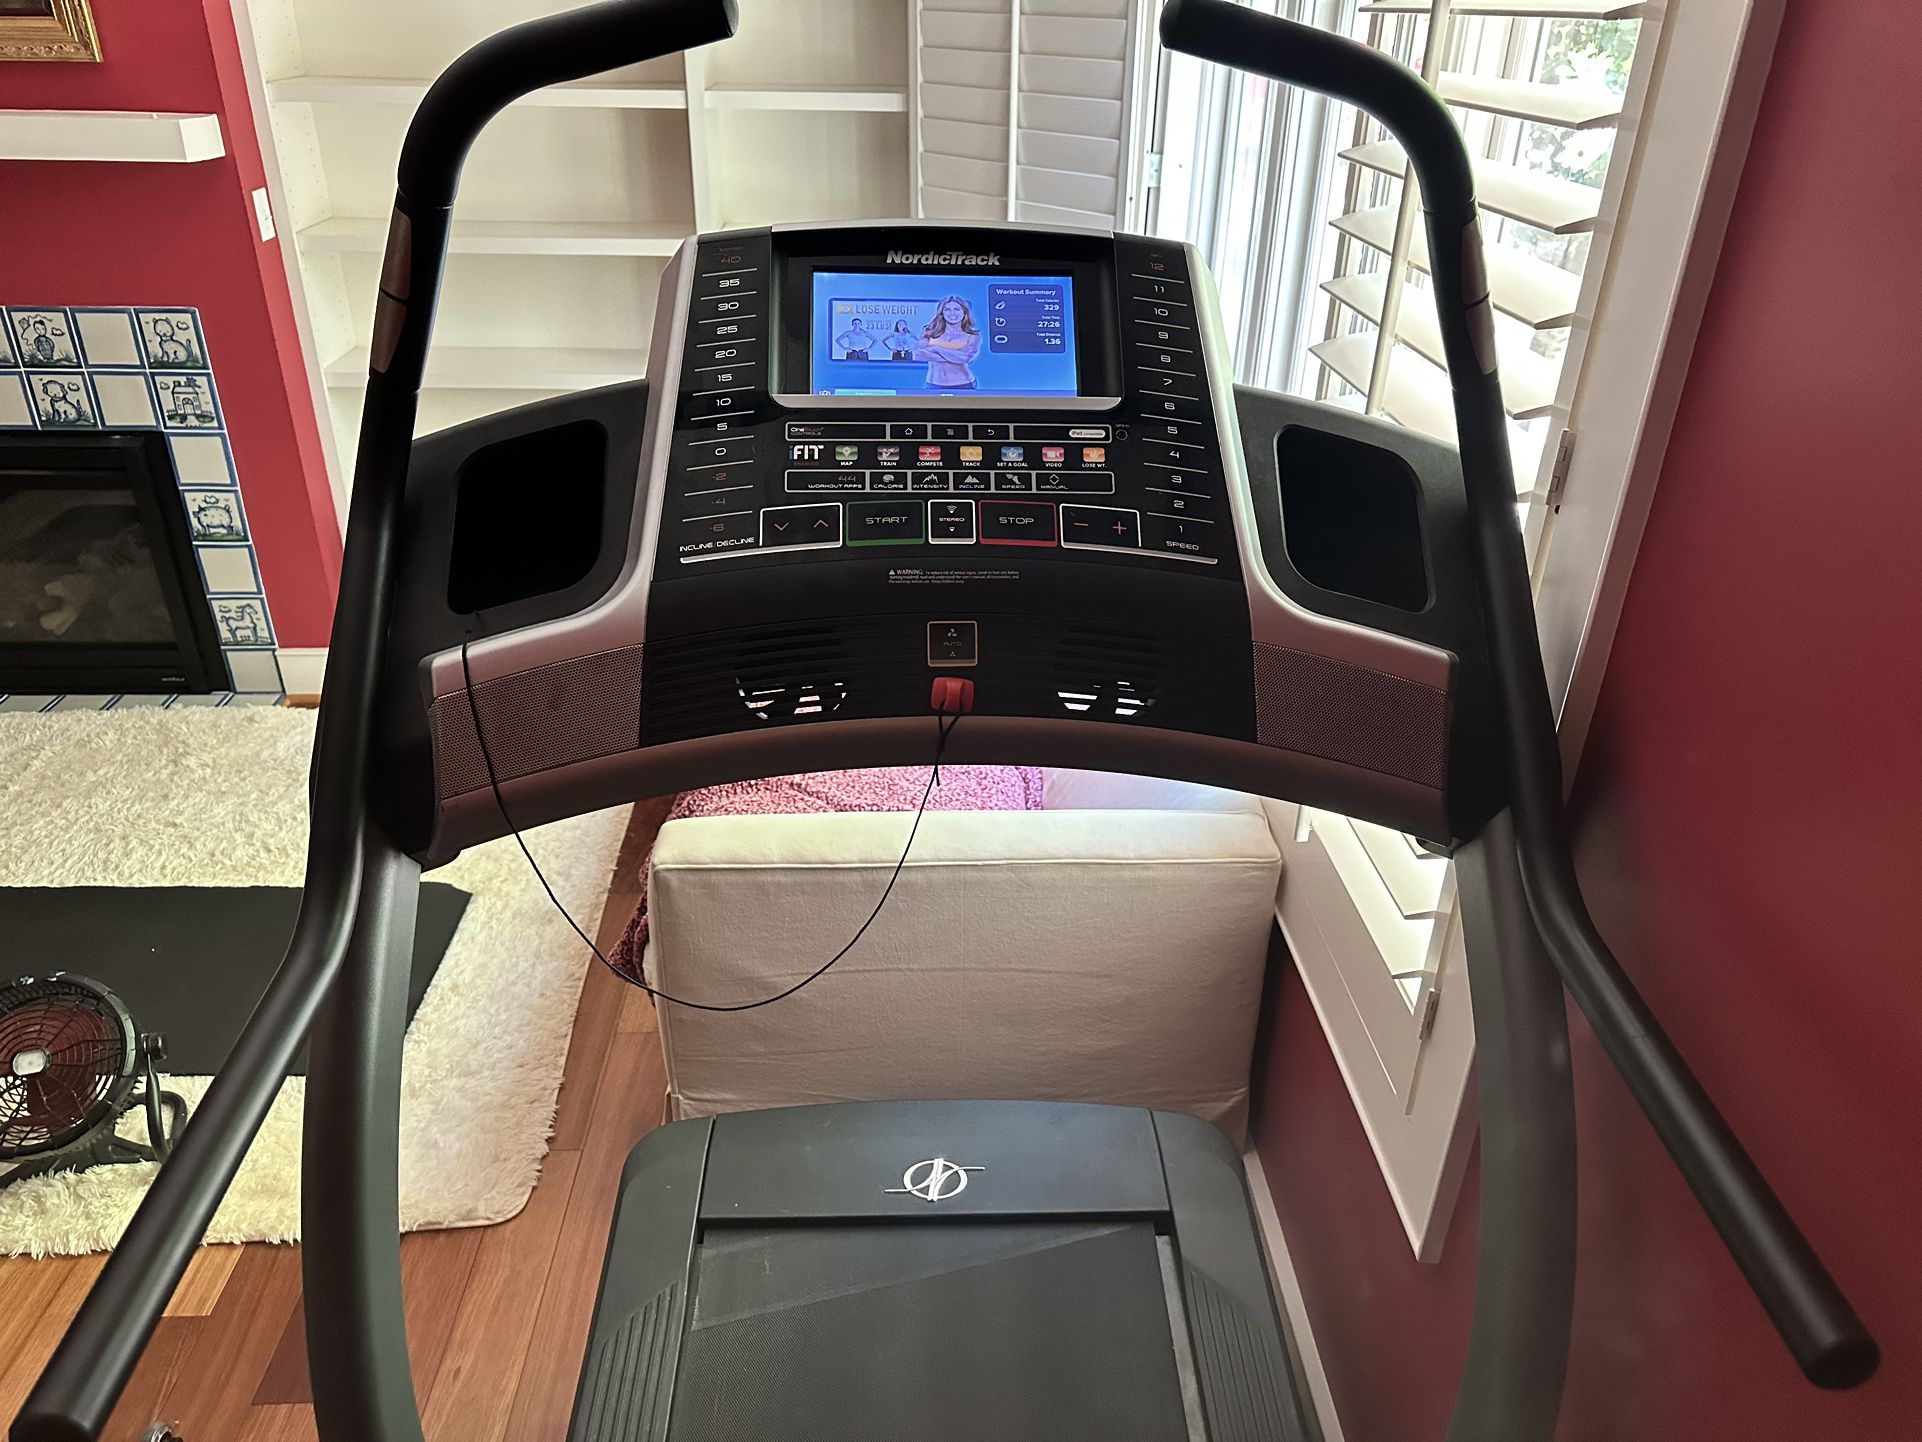 Nordic-track Treadmill